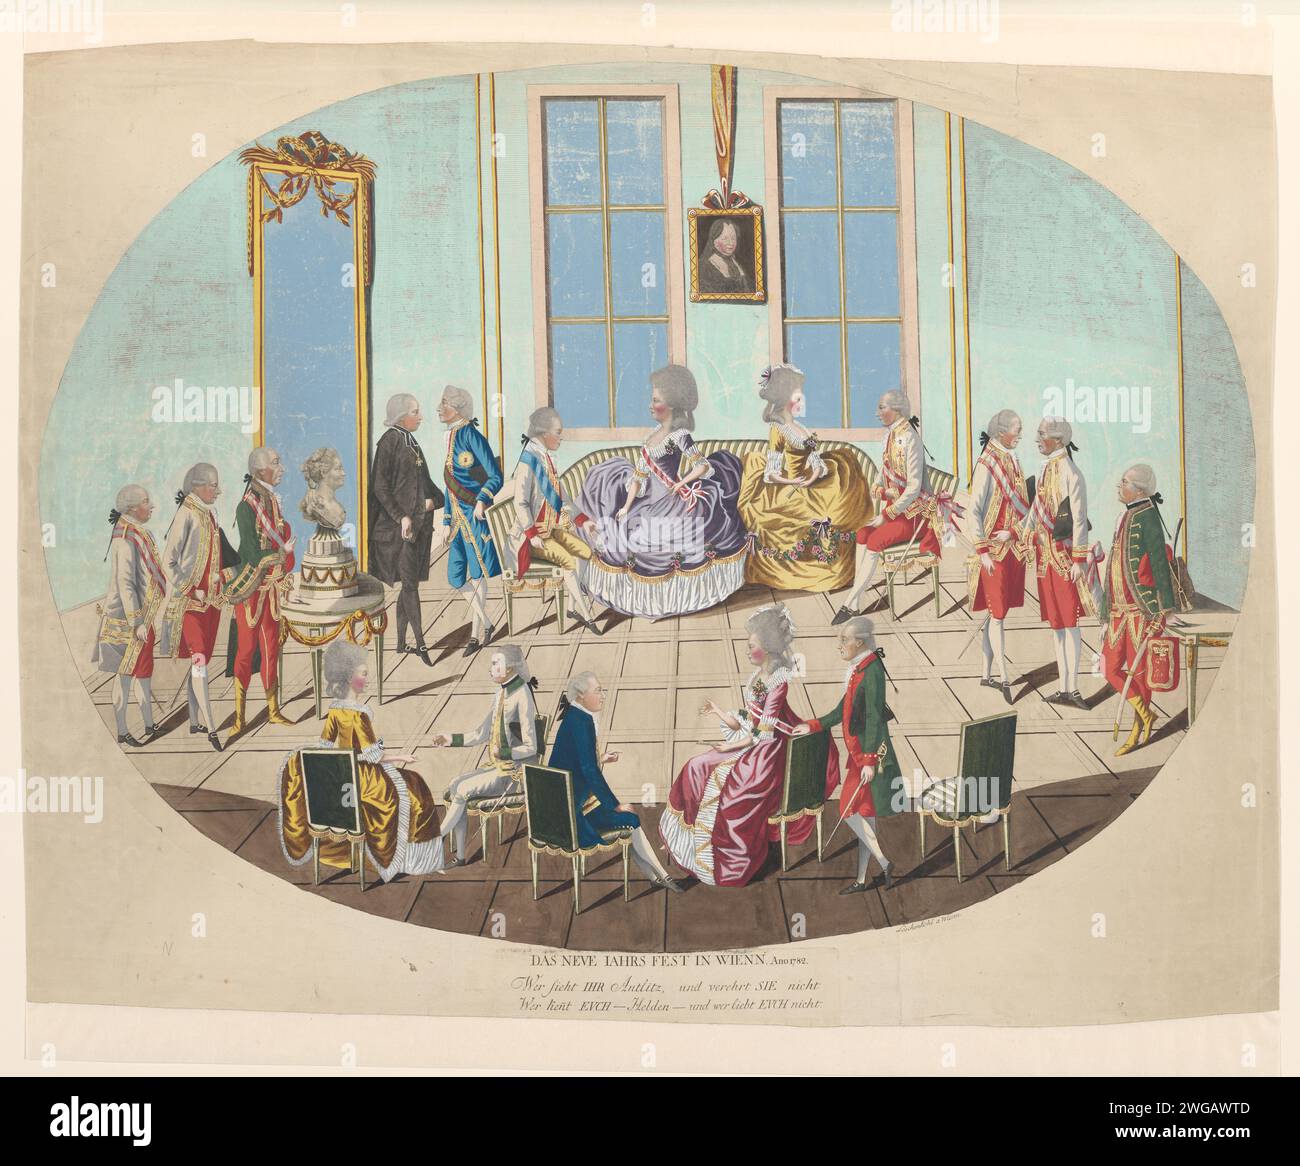 Fête du nouvel an à Vienne, Johann Hieronymus Loeschenkohl, 1782 papier gravé des personnages historiques anonymes dépeints dans un groupe, dans un portrait de groupe. Janvier 1 ( festivités) Vienne Banque D'Images